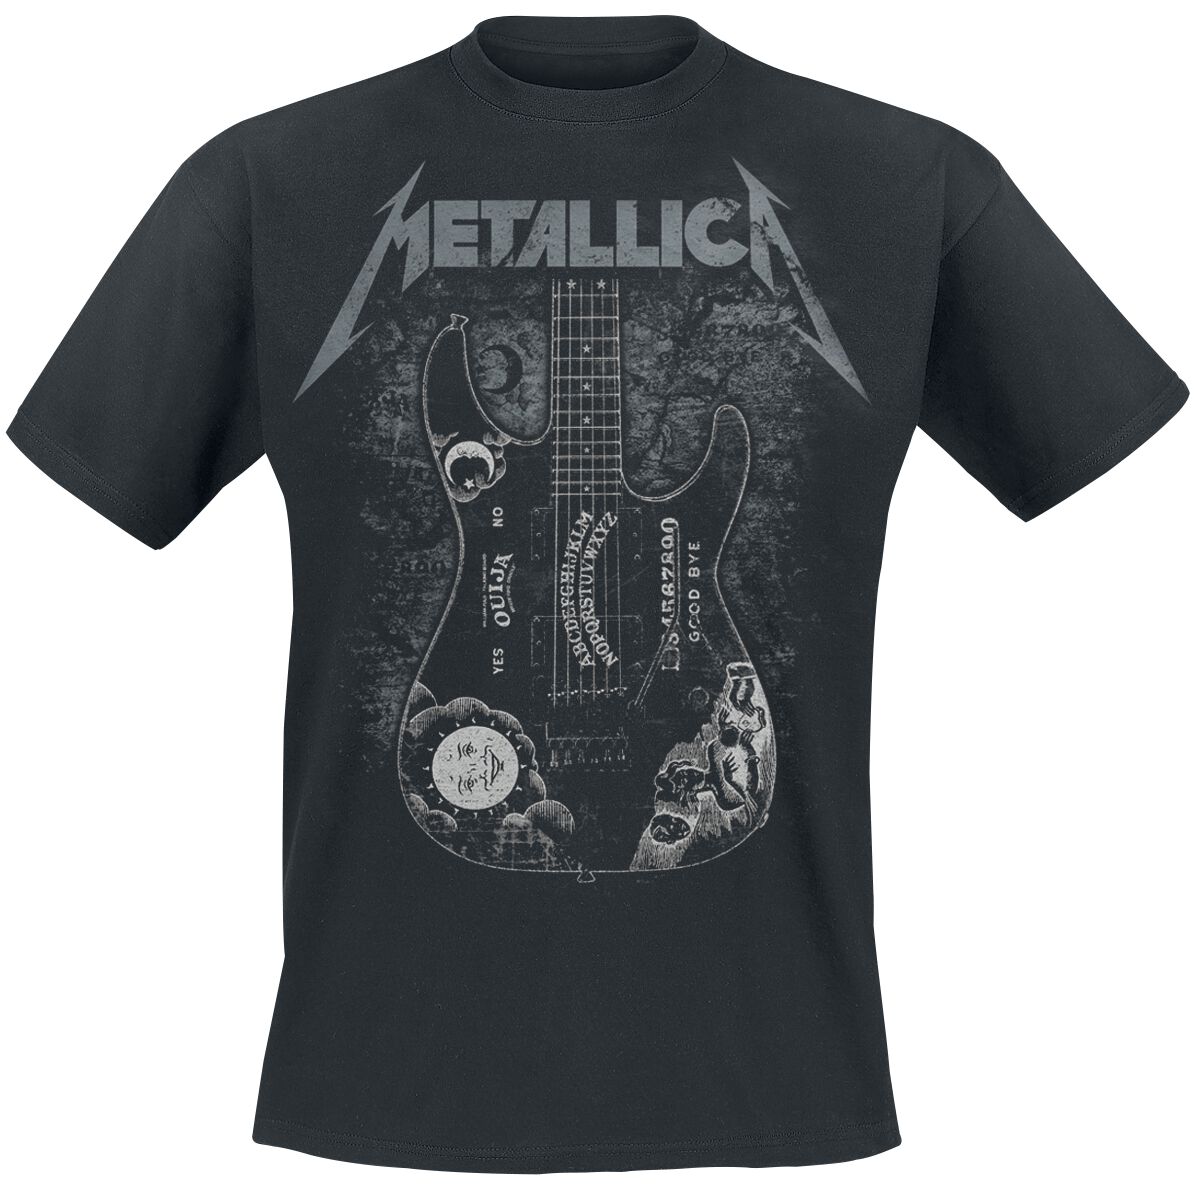 Metallica T-Shirt - Hammett Ouija Guitar - S bis 3XL - für Männer - Größe 3XL - schwarz  - Lizenziertes Merchandise!